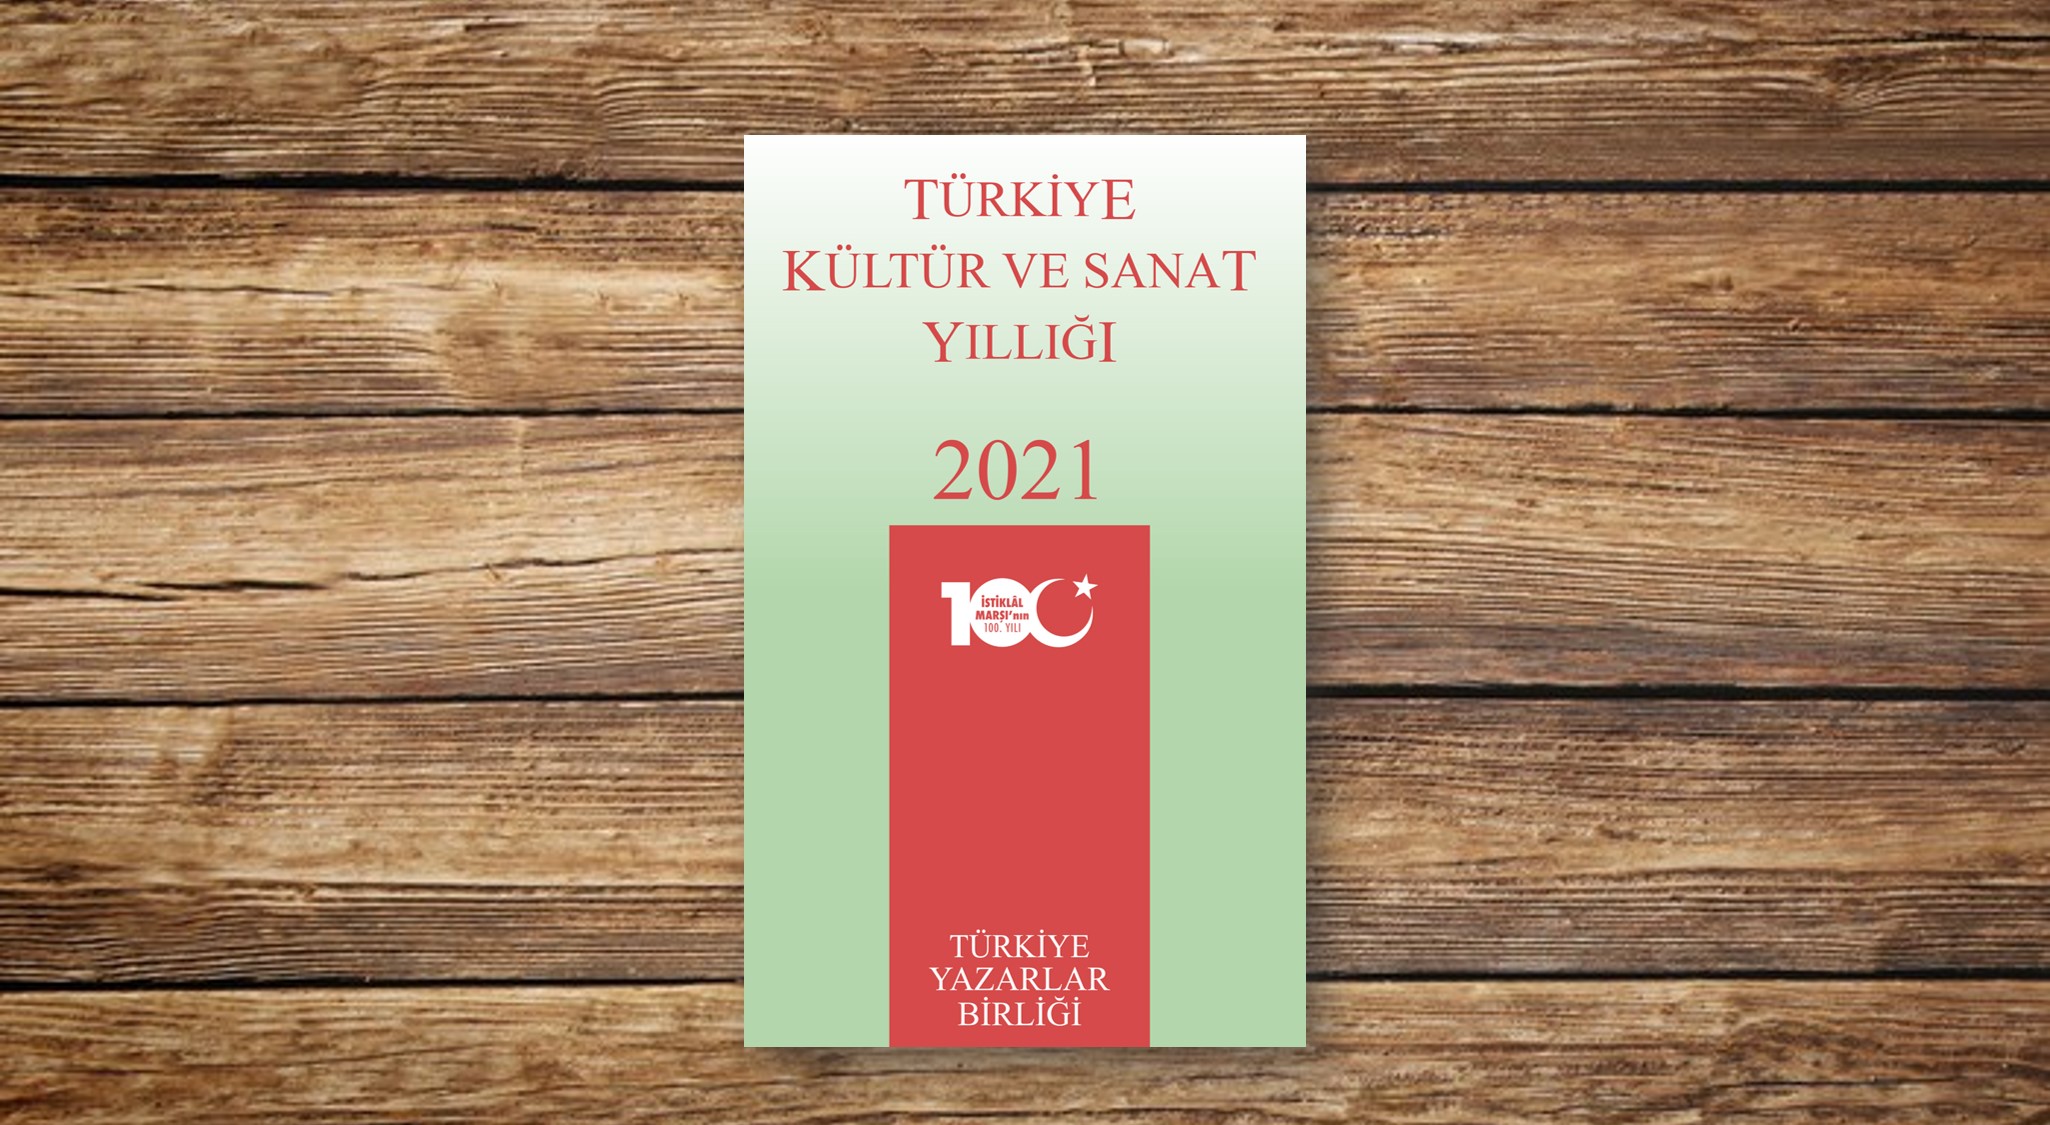 Türkiye Kültür ve Sanat Yıllığı 2021